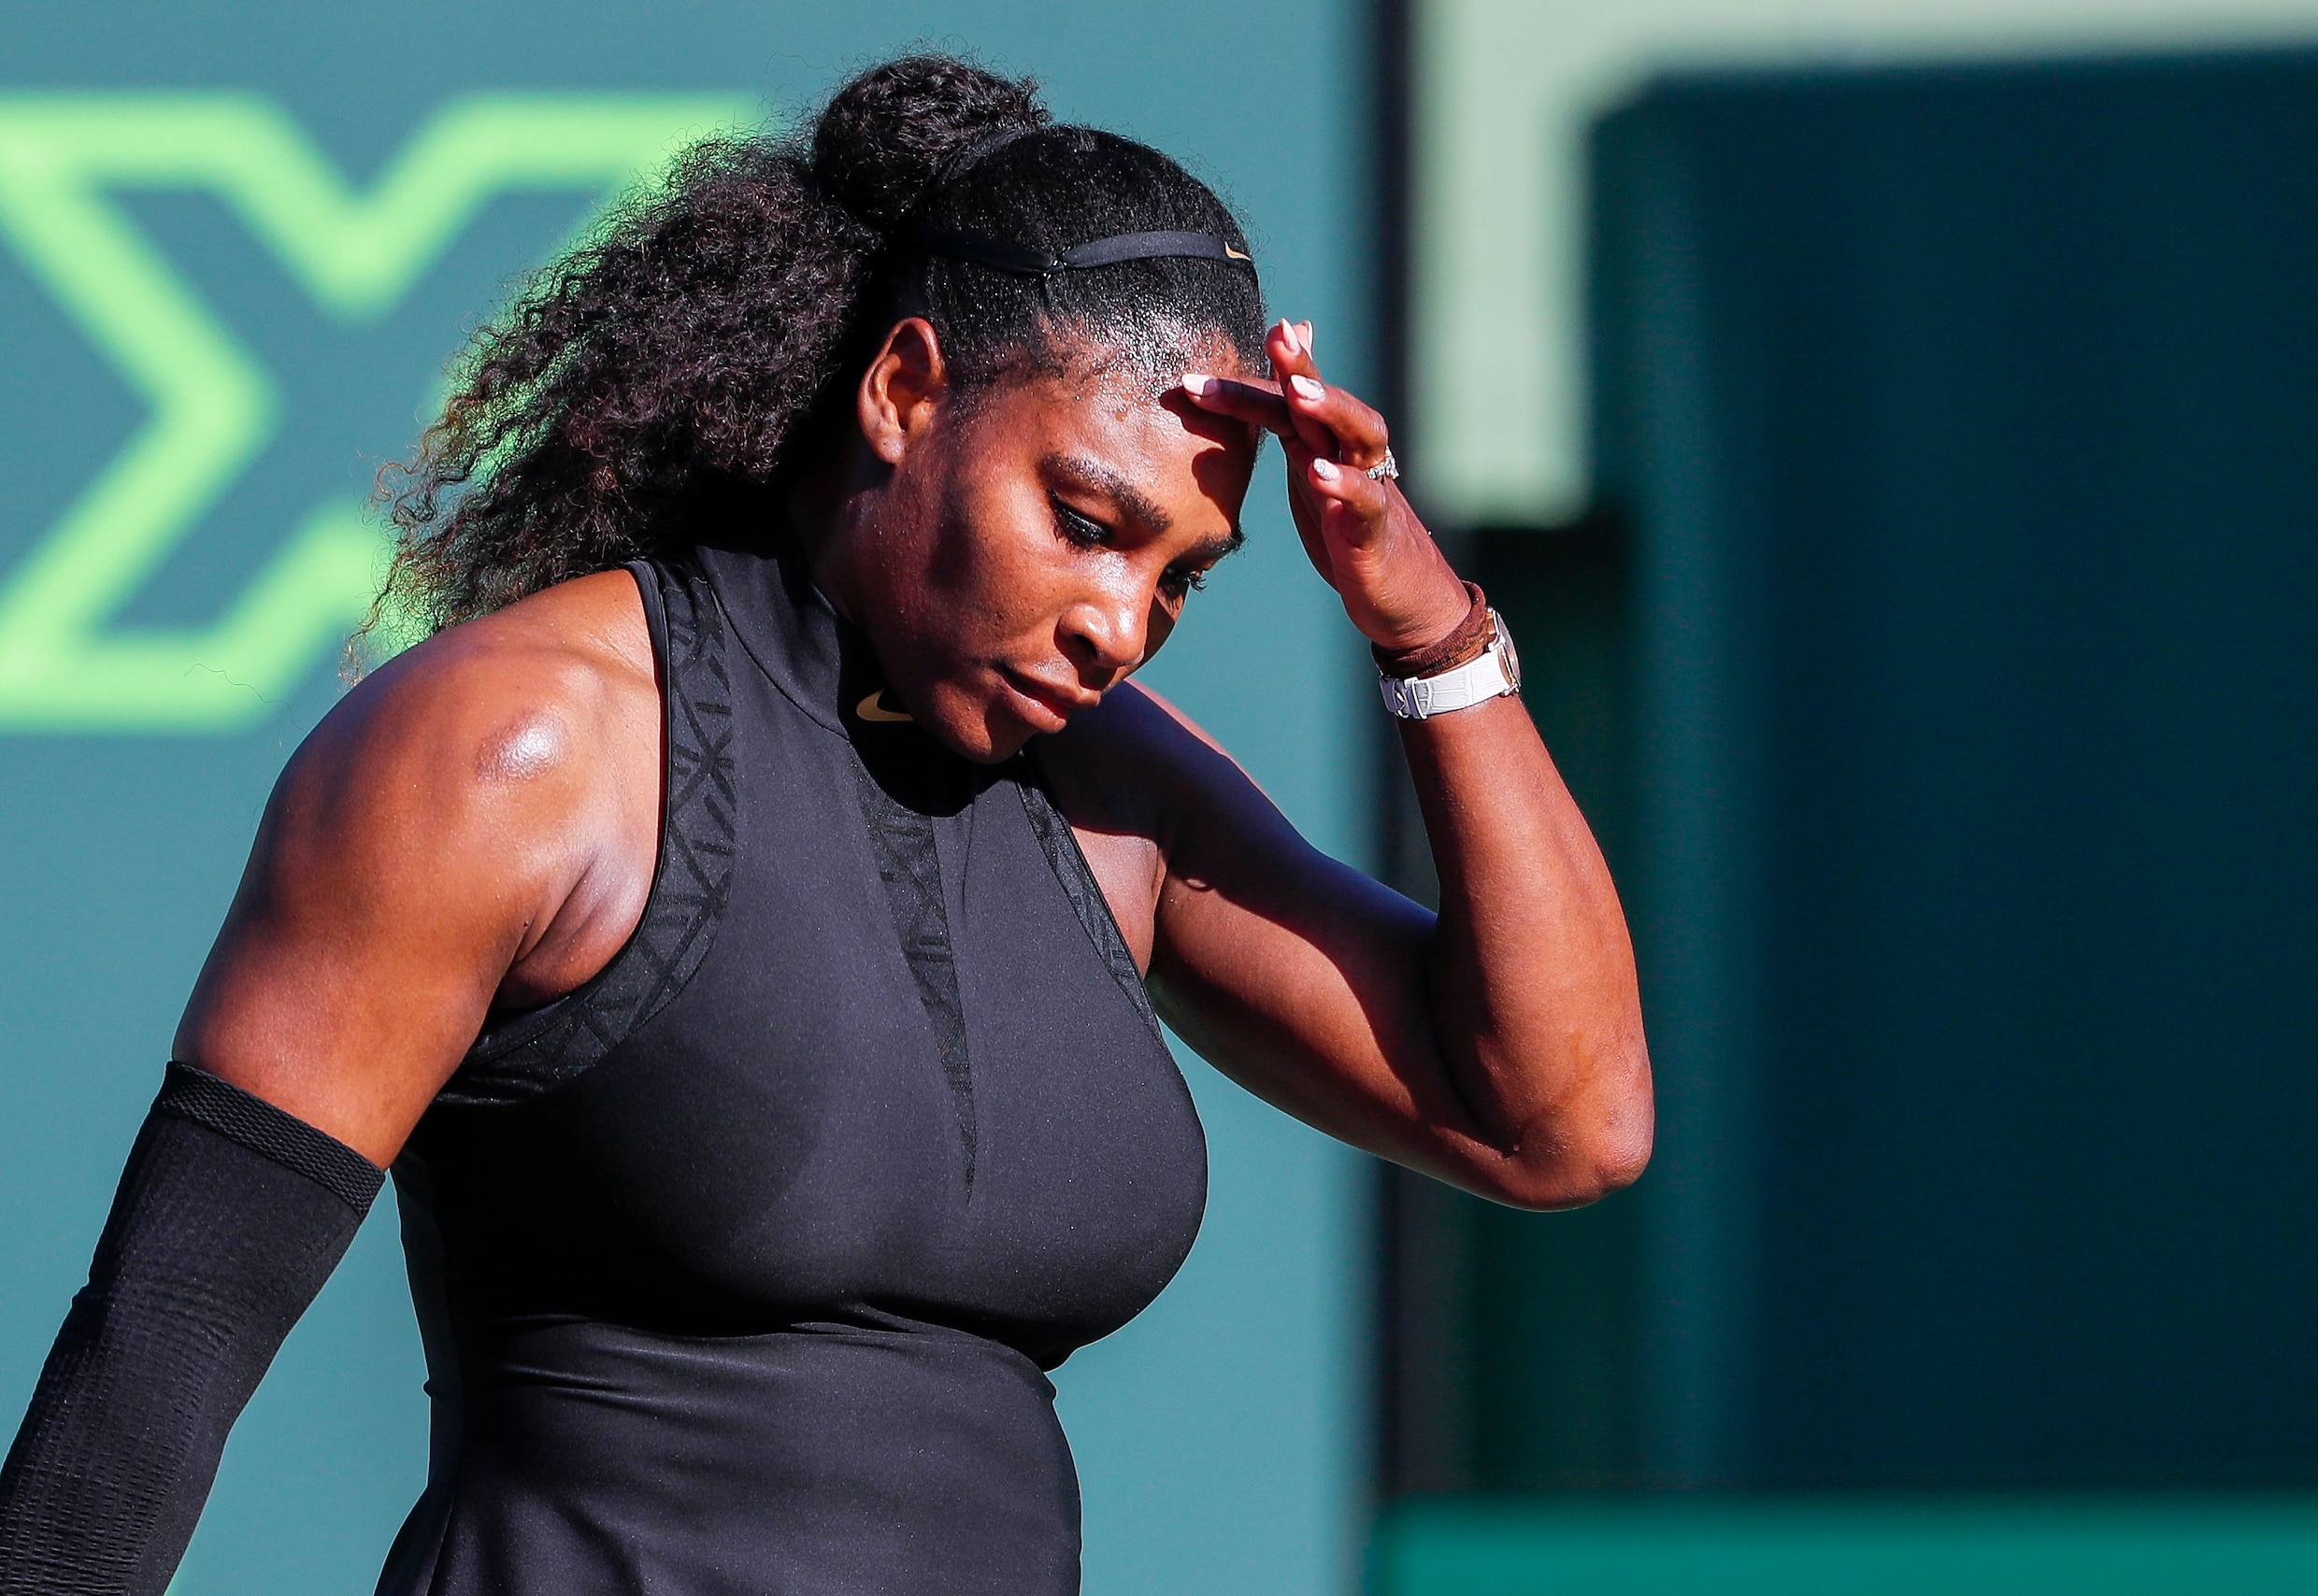 Osaka wipt Serena Williams al in eerste ronde